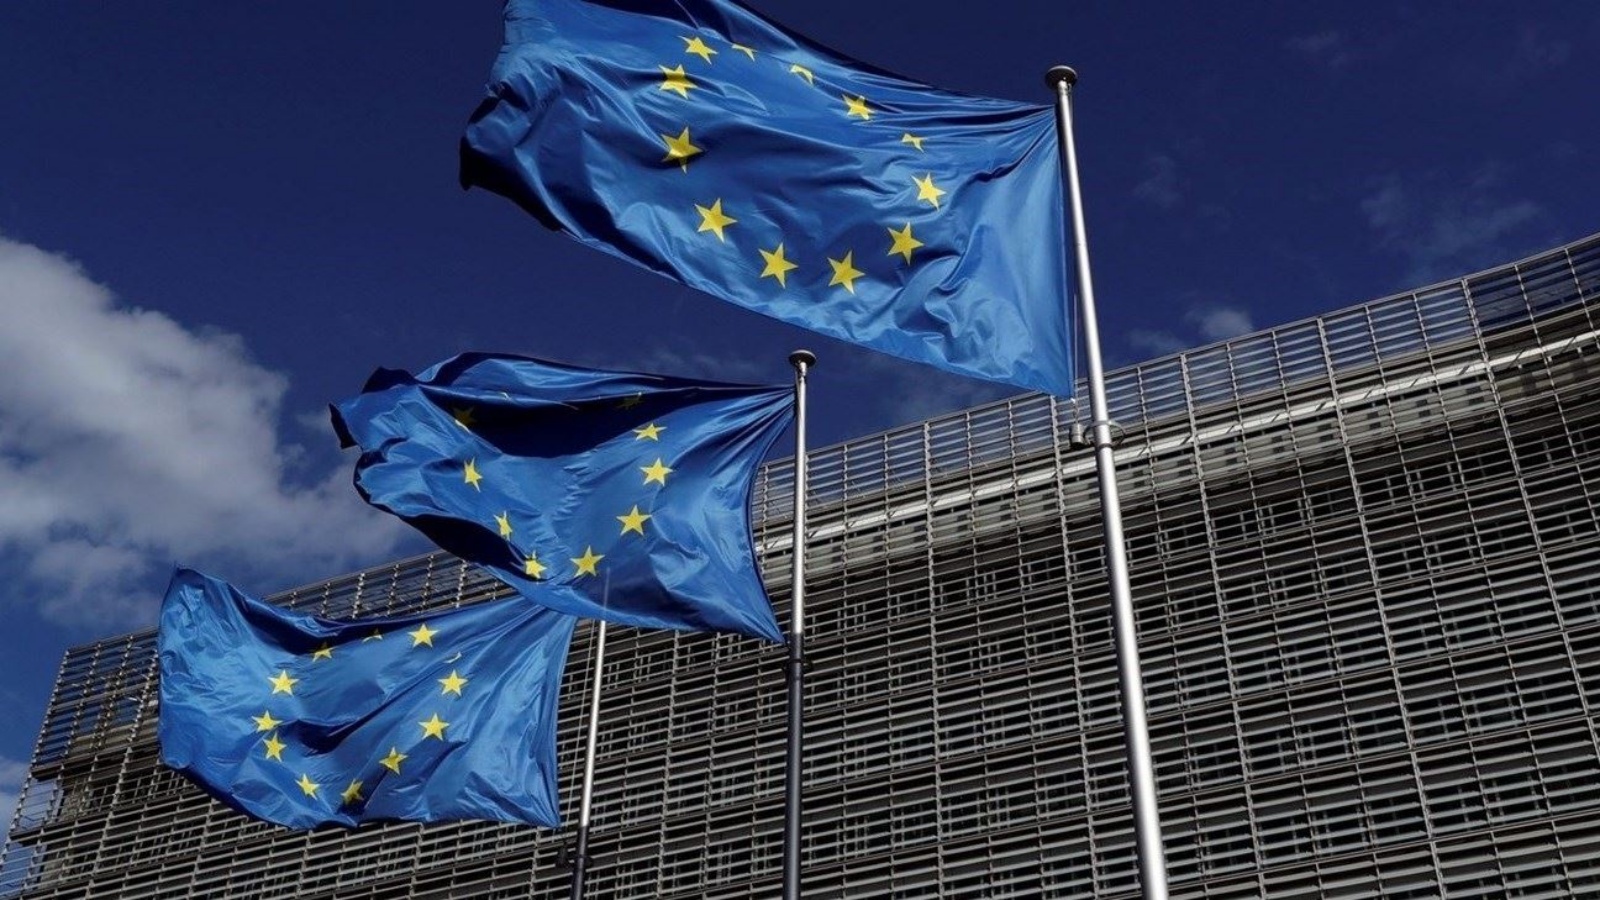 الاتحاد الأوروبي يقترح حزمة عقوبات جديدة على روسيا